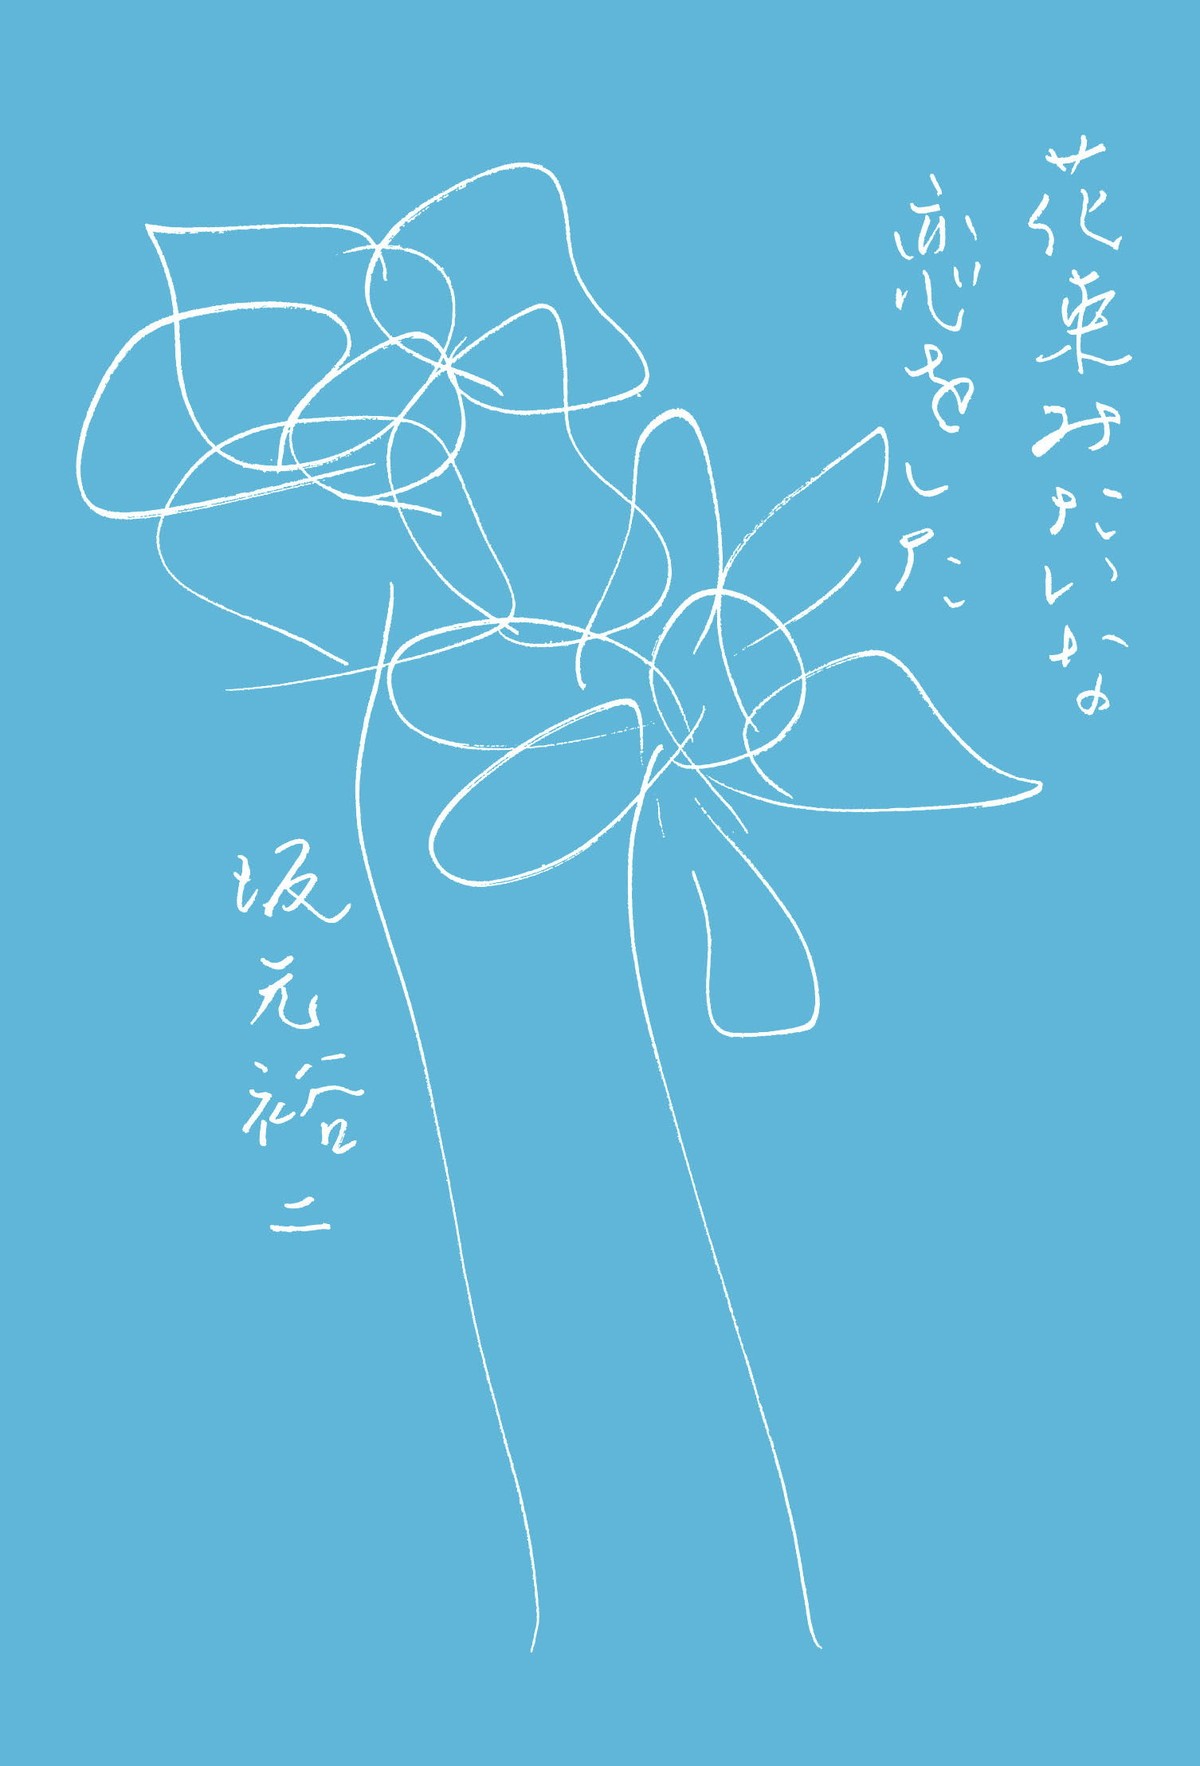 菅田将暉×有村架純の自然体な2ショット 『花束みたいな恋をした』フォトブック発売